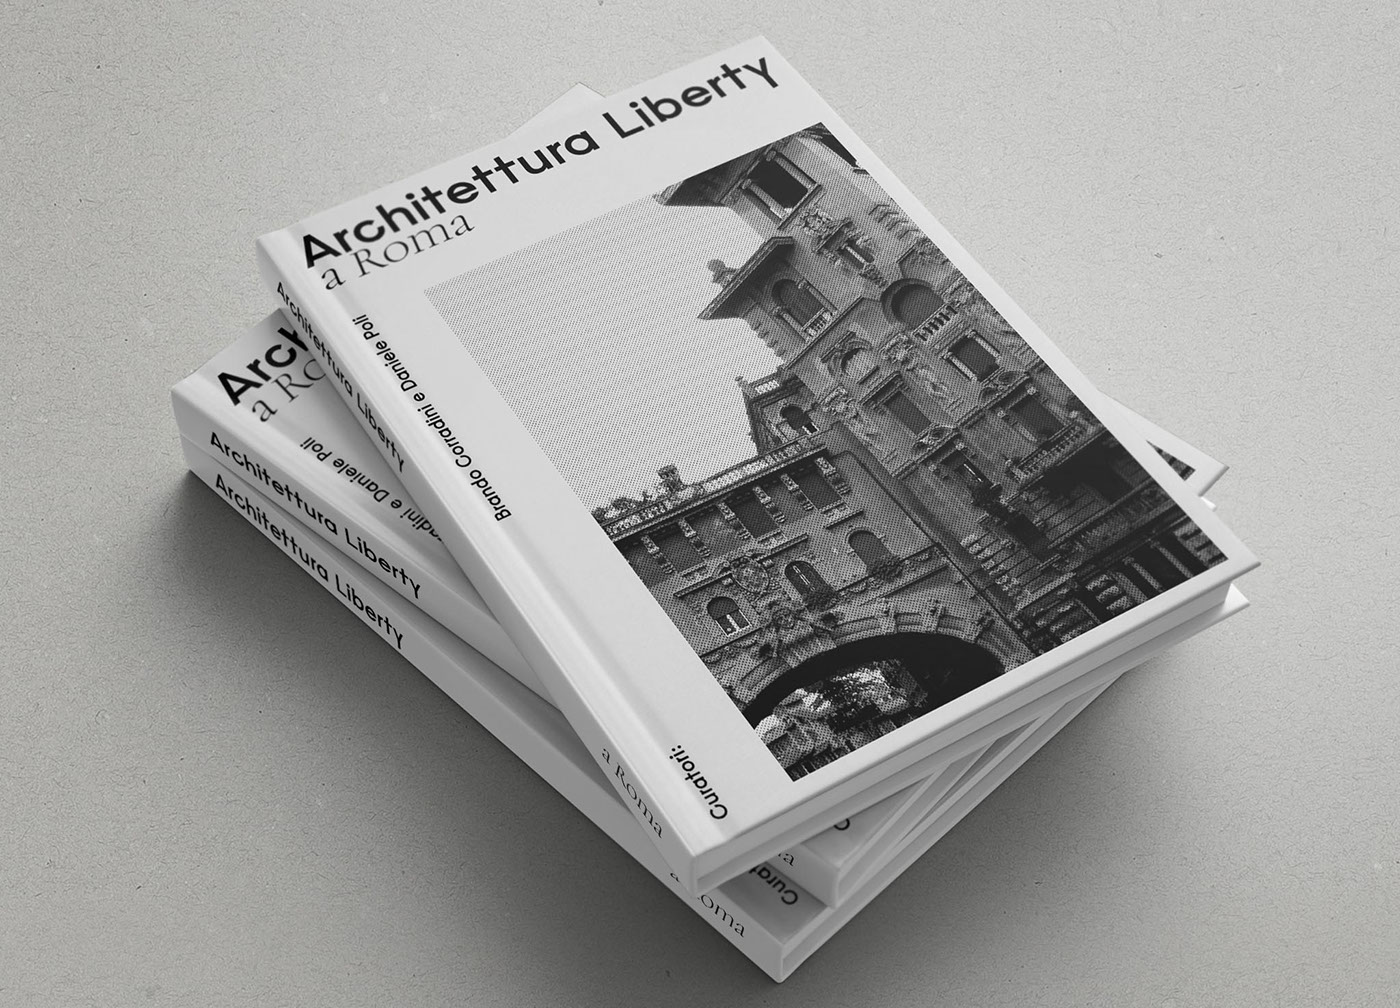 architettura architettura liberty Liberty Rome roma coppedè art art nouvea book design Bookdesign